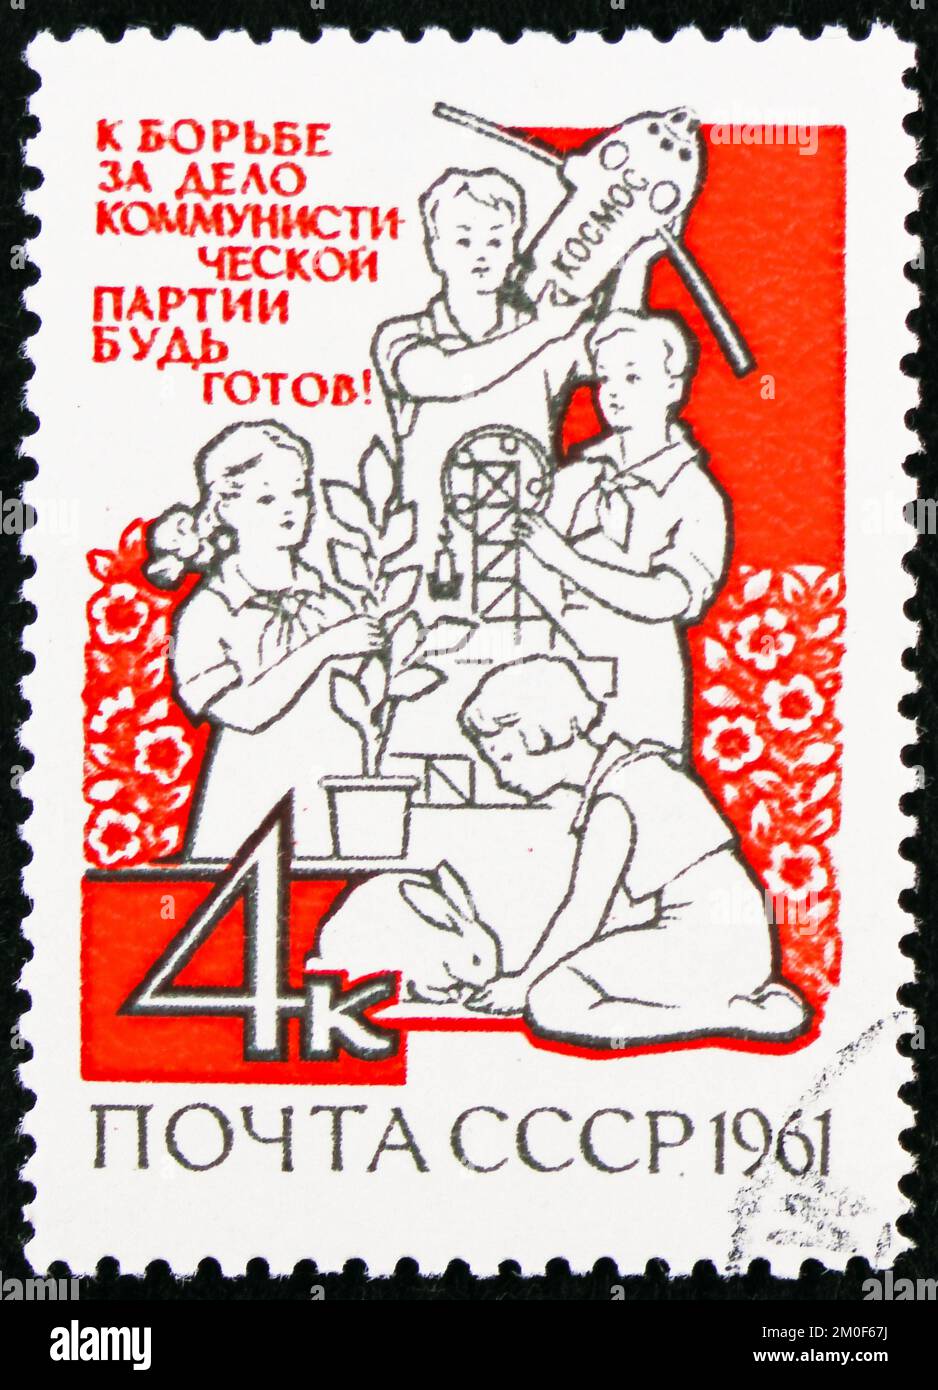 MOSCOU, RUSSIE - 29 OCTOBRE 2022: Timbre-poste imprimé en URSS montre les jeunes techniciens et naturalistes, série, Journée internationale de l'enfance vers 1961 Banque D'Images